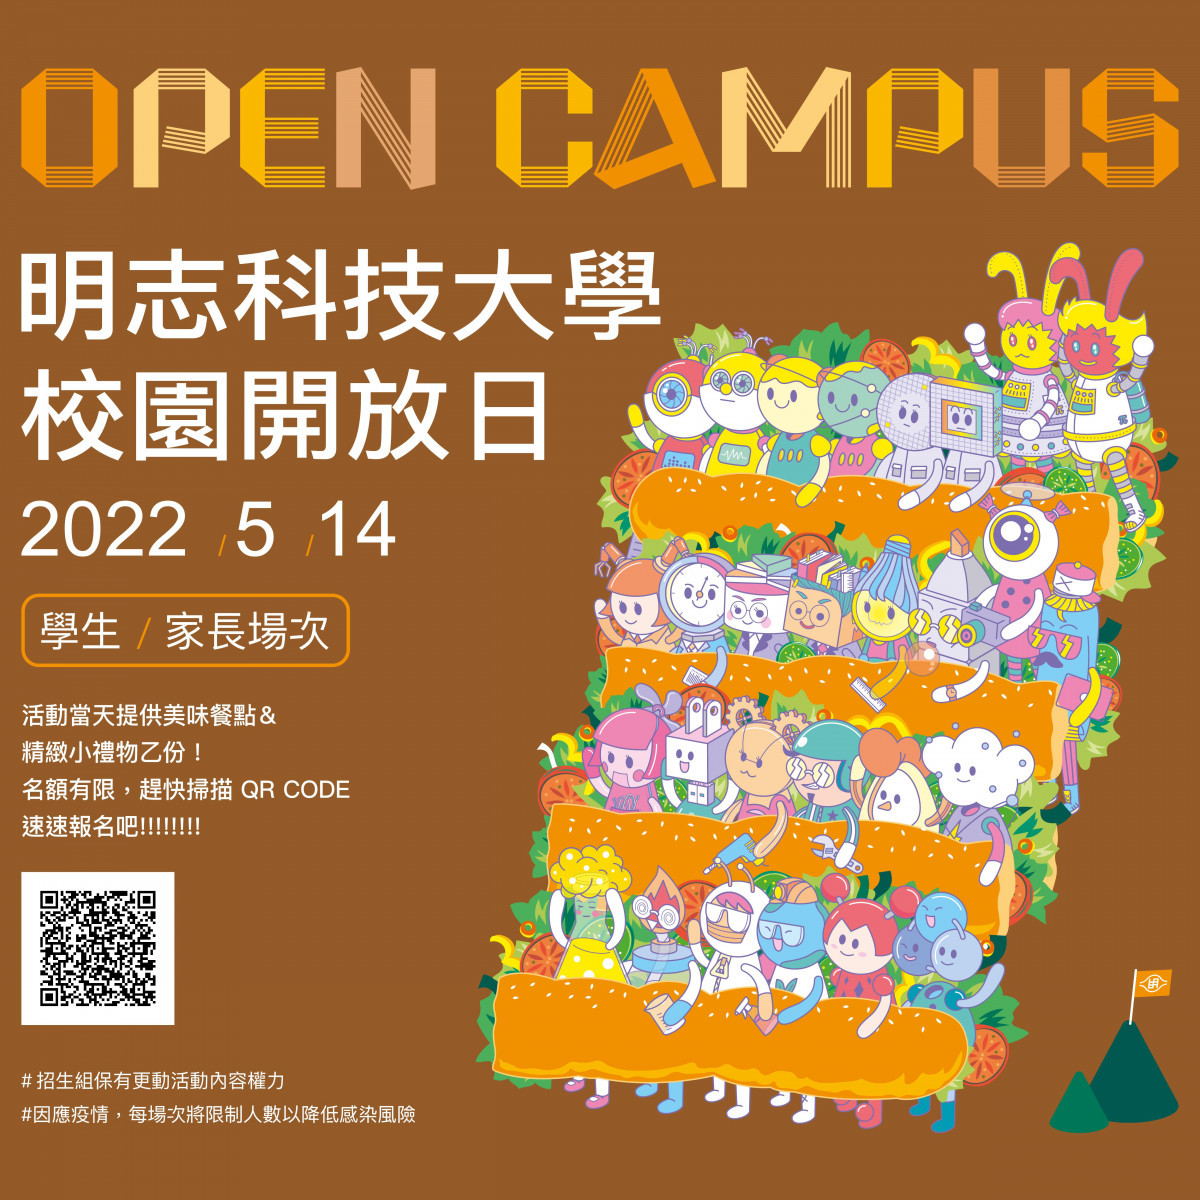 明志科大Open Campus 開放學子探索未來產業價值